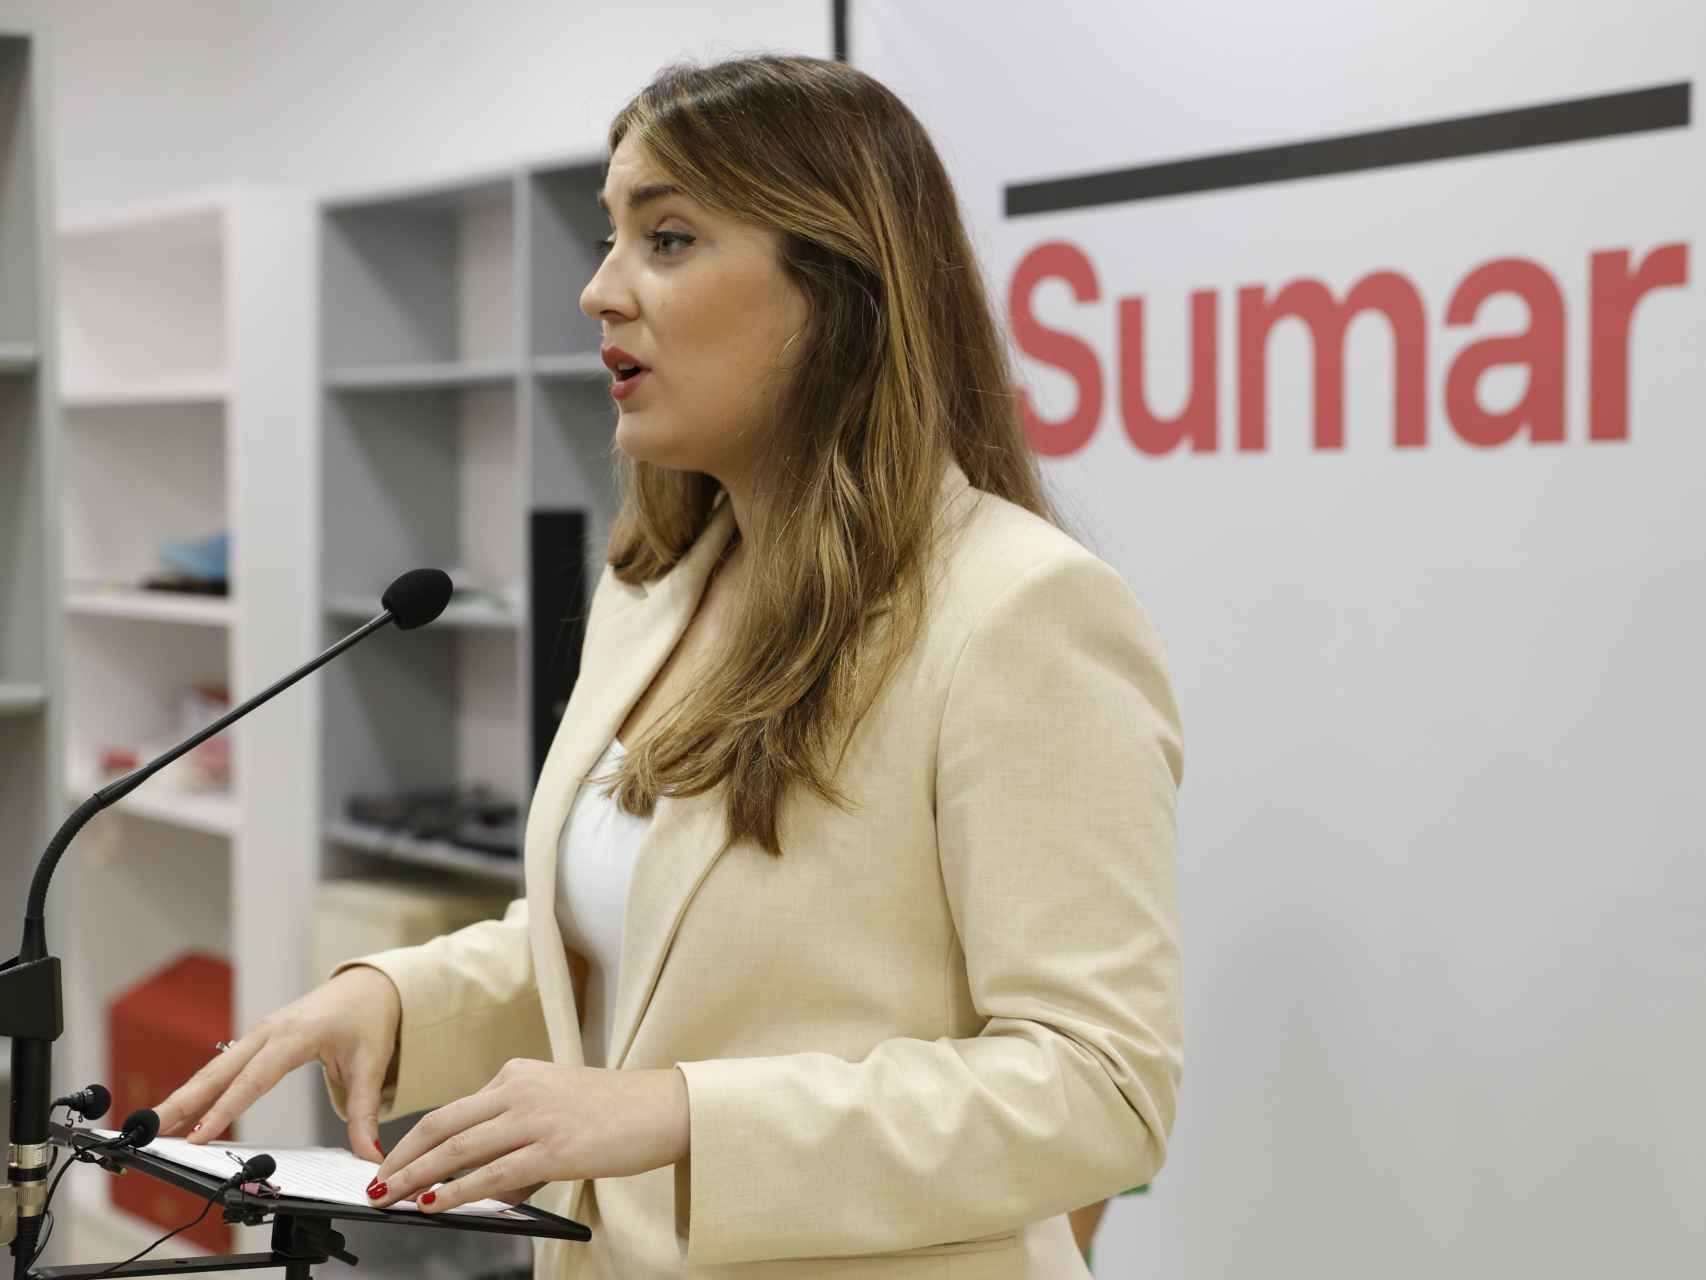 La candidata a lehendakari de Sumar, Alba García, interviene durante la presentación este jueves en Bilbao de la coalición electoral / Miguel Toña - EFE